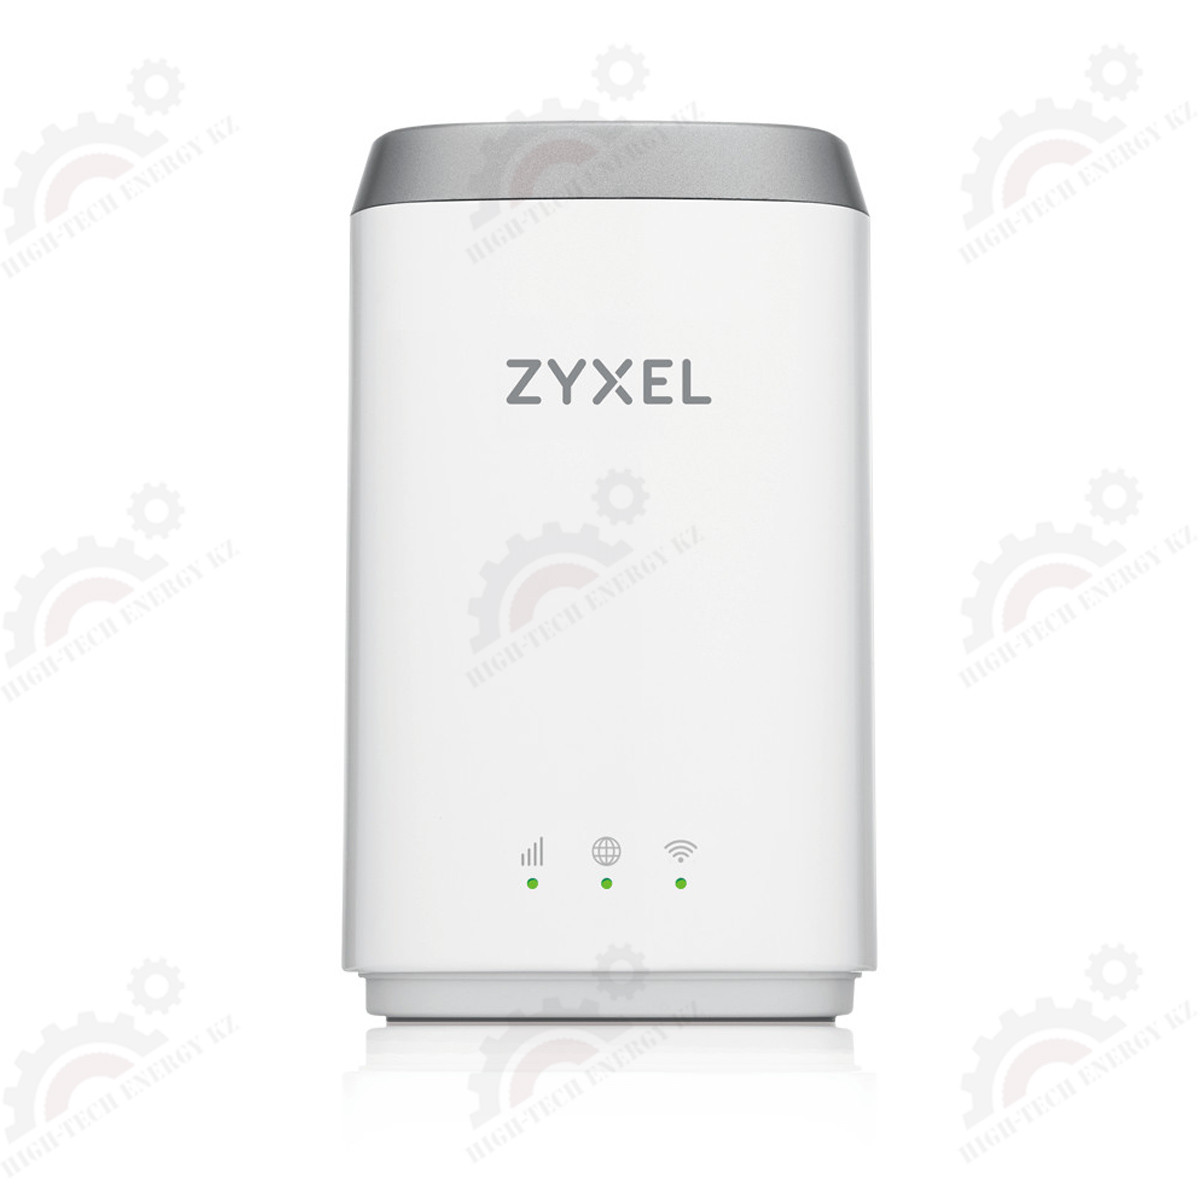 Компактный LTE Cat.6 Wi-Fi маршрутизатор ZYXEL LTE4506 v2 (вставляется сим-карта)